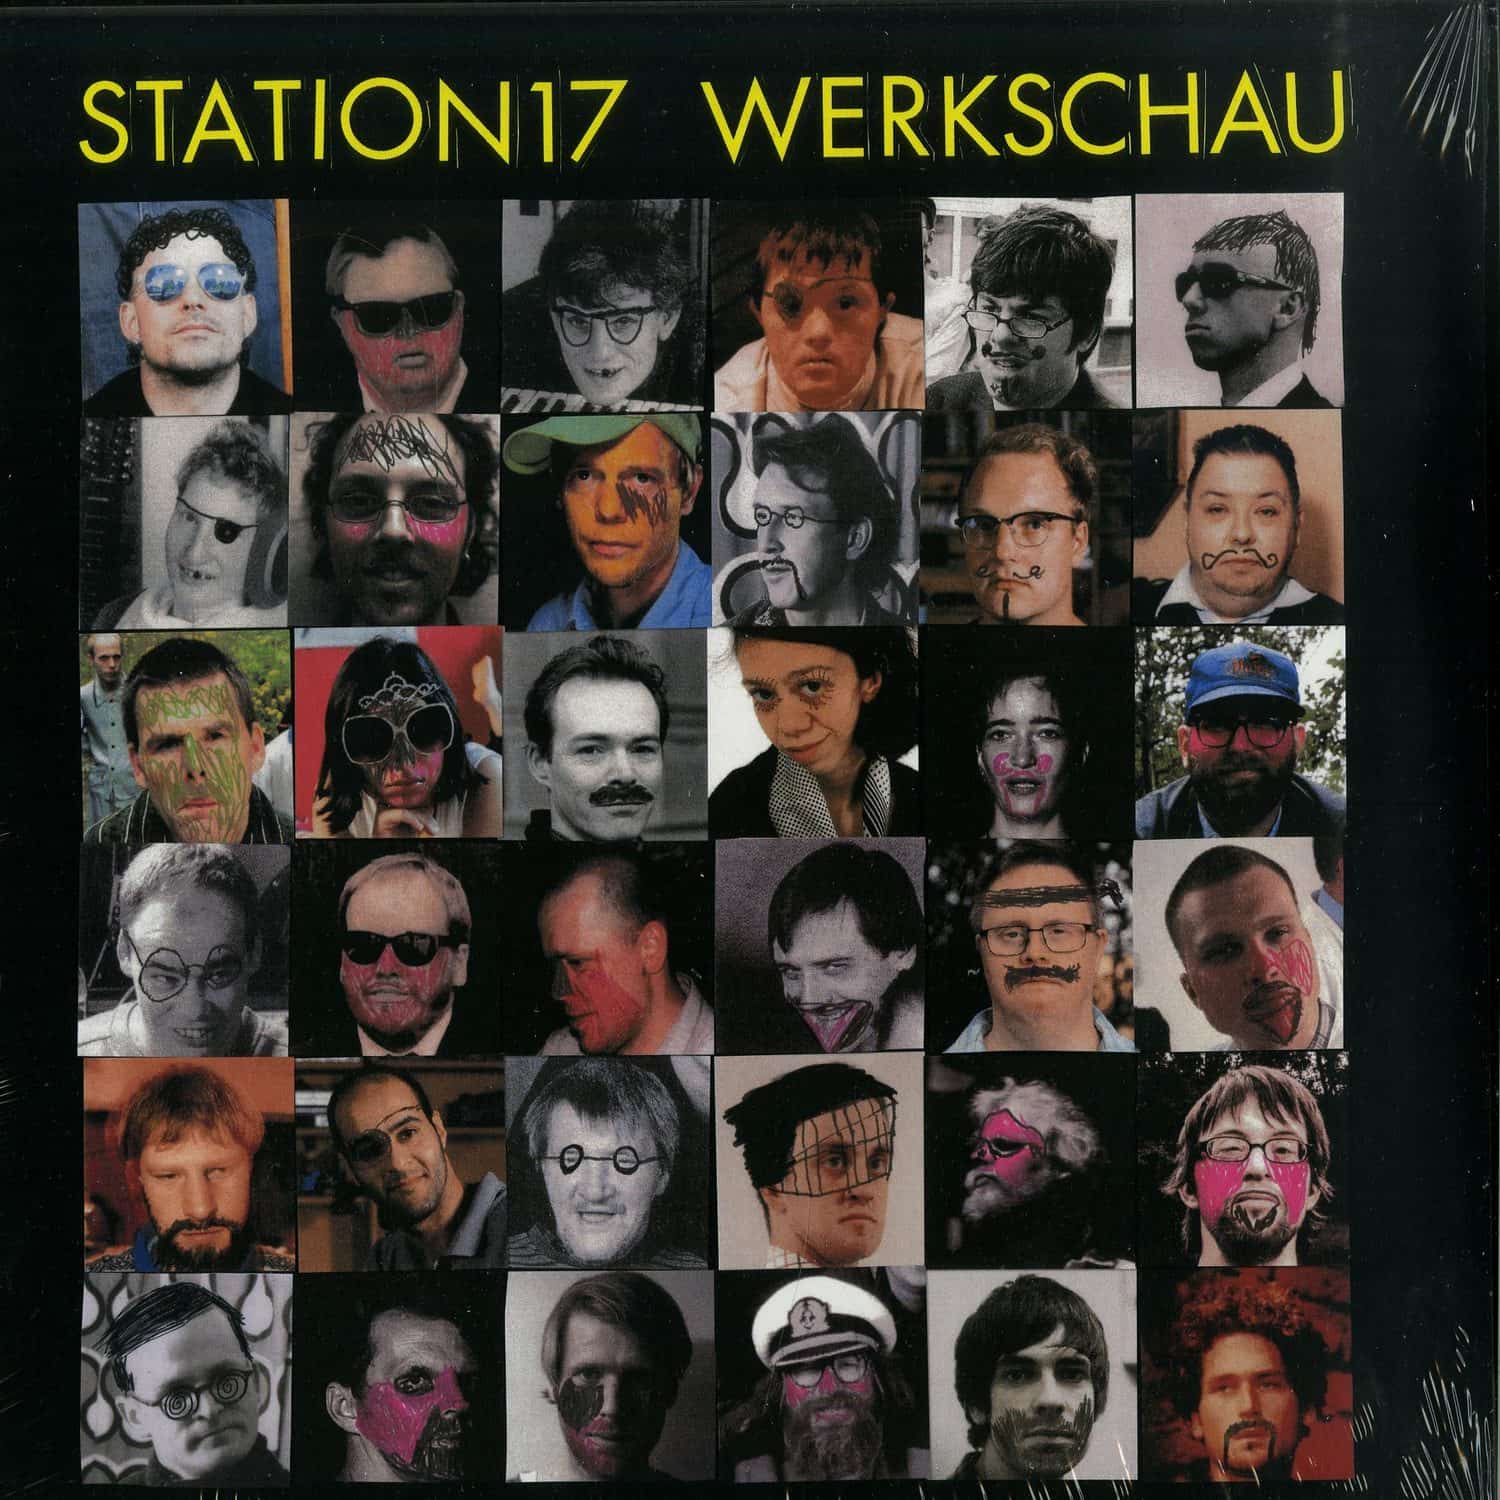 Station 17 - WERKSCHAU 